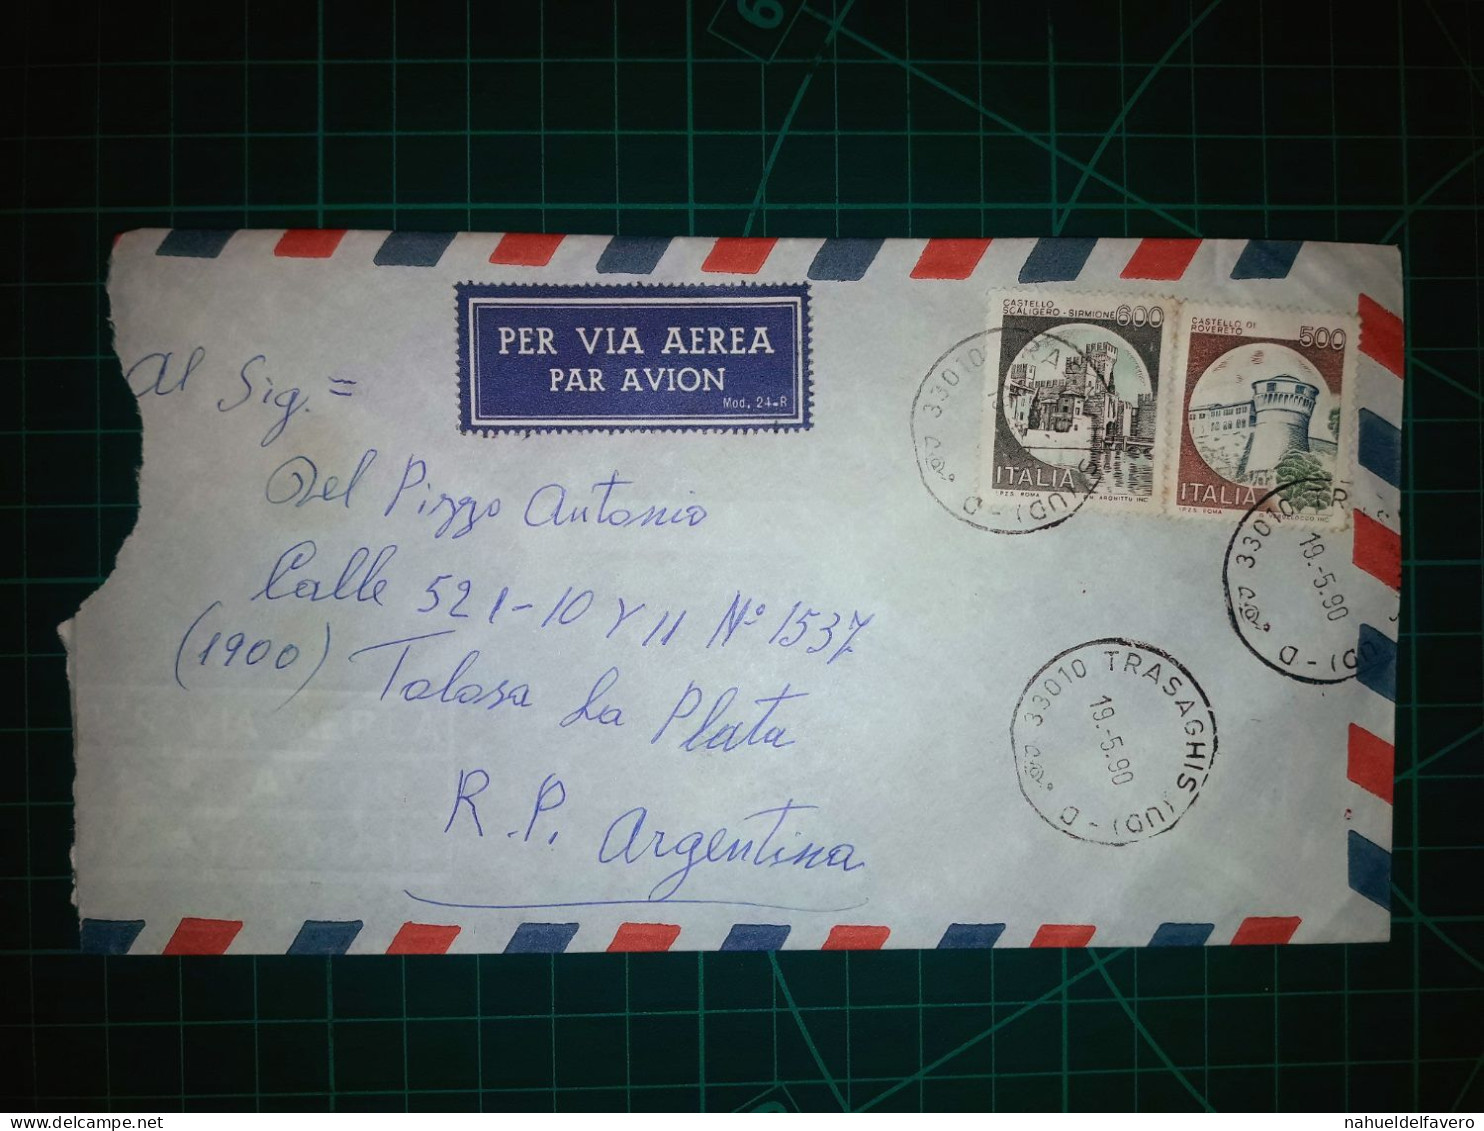 ITALIE, Enveloppe Aereo Circulée Par Avion Vers La République Argentine Avec Une Belle Variété De Timbres-poste (château - Luftpost